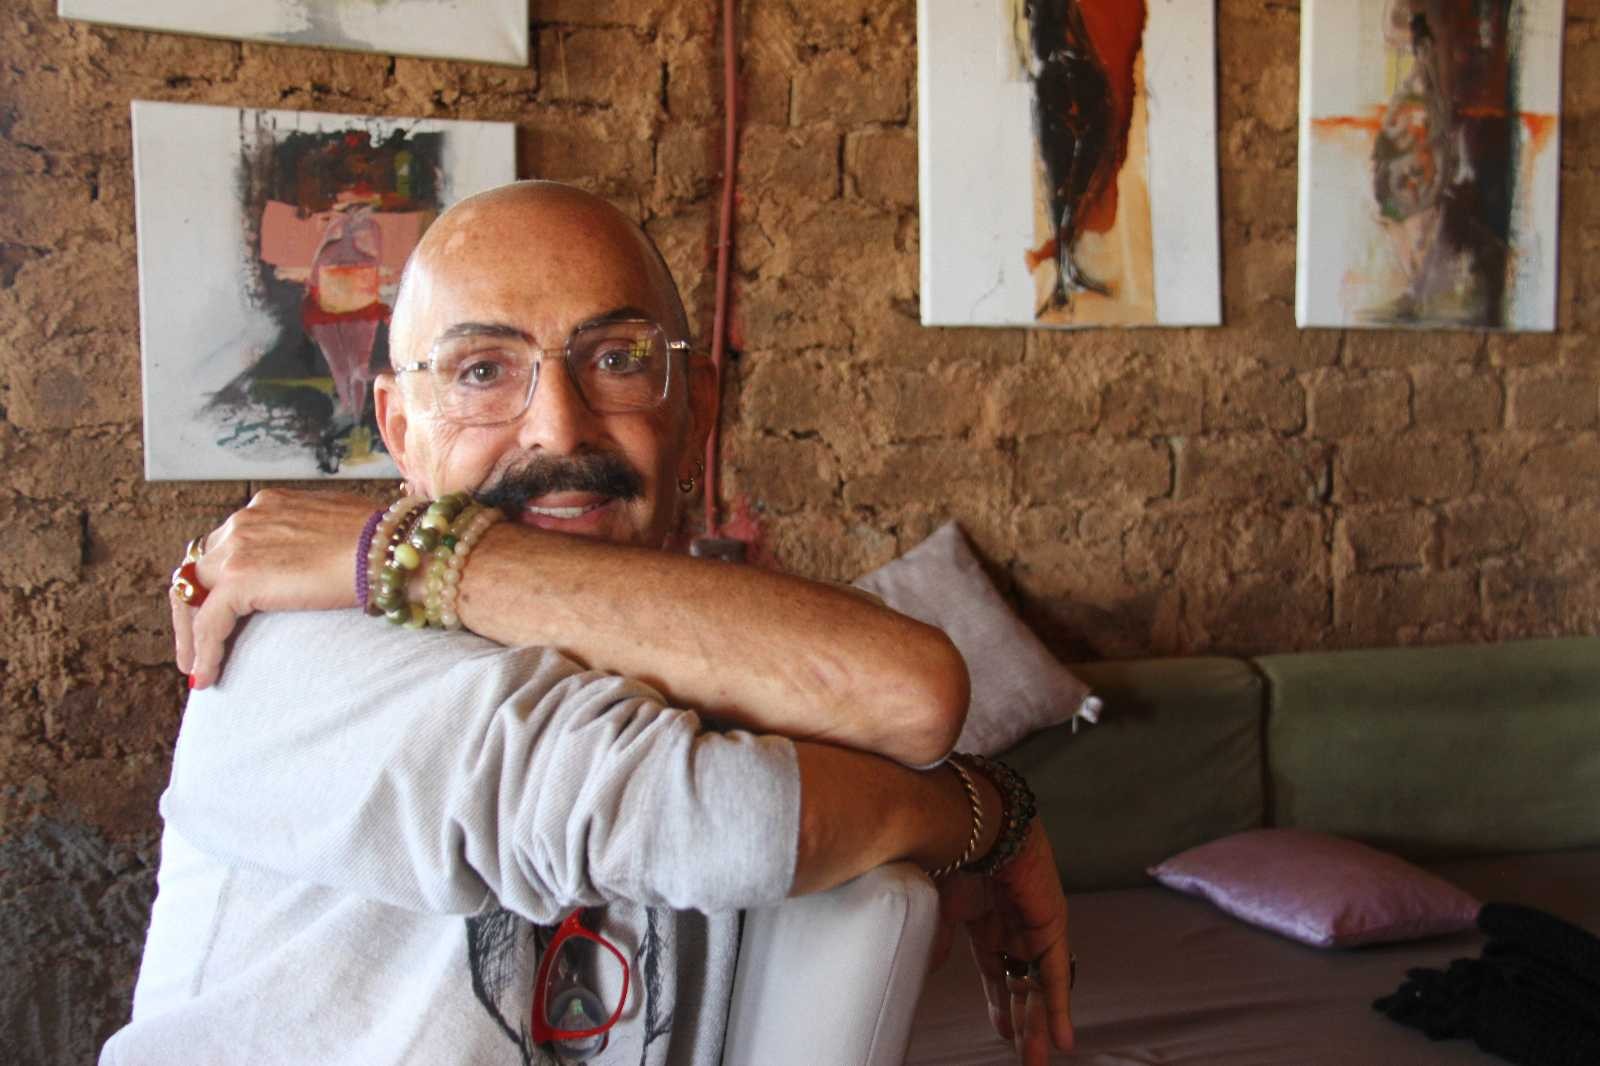 Ünlü modacı Cemil İpekçi, Sonsuz Şükran Köyü’ndeki kerpiç evini atölyeye dönüştürecek #konya